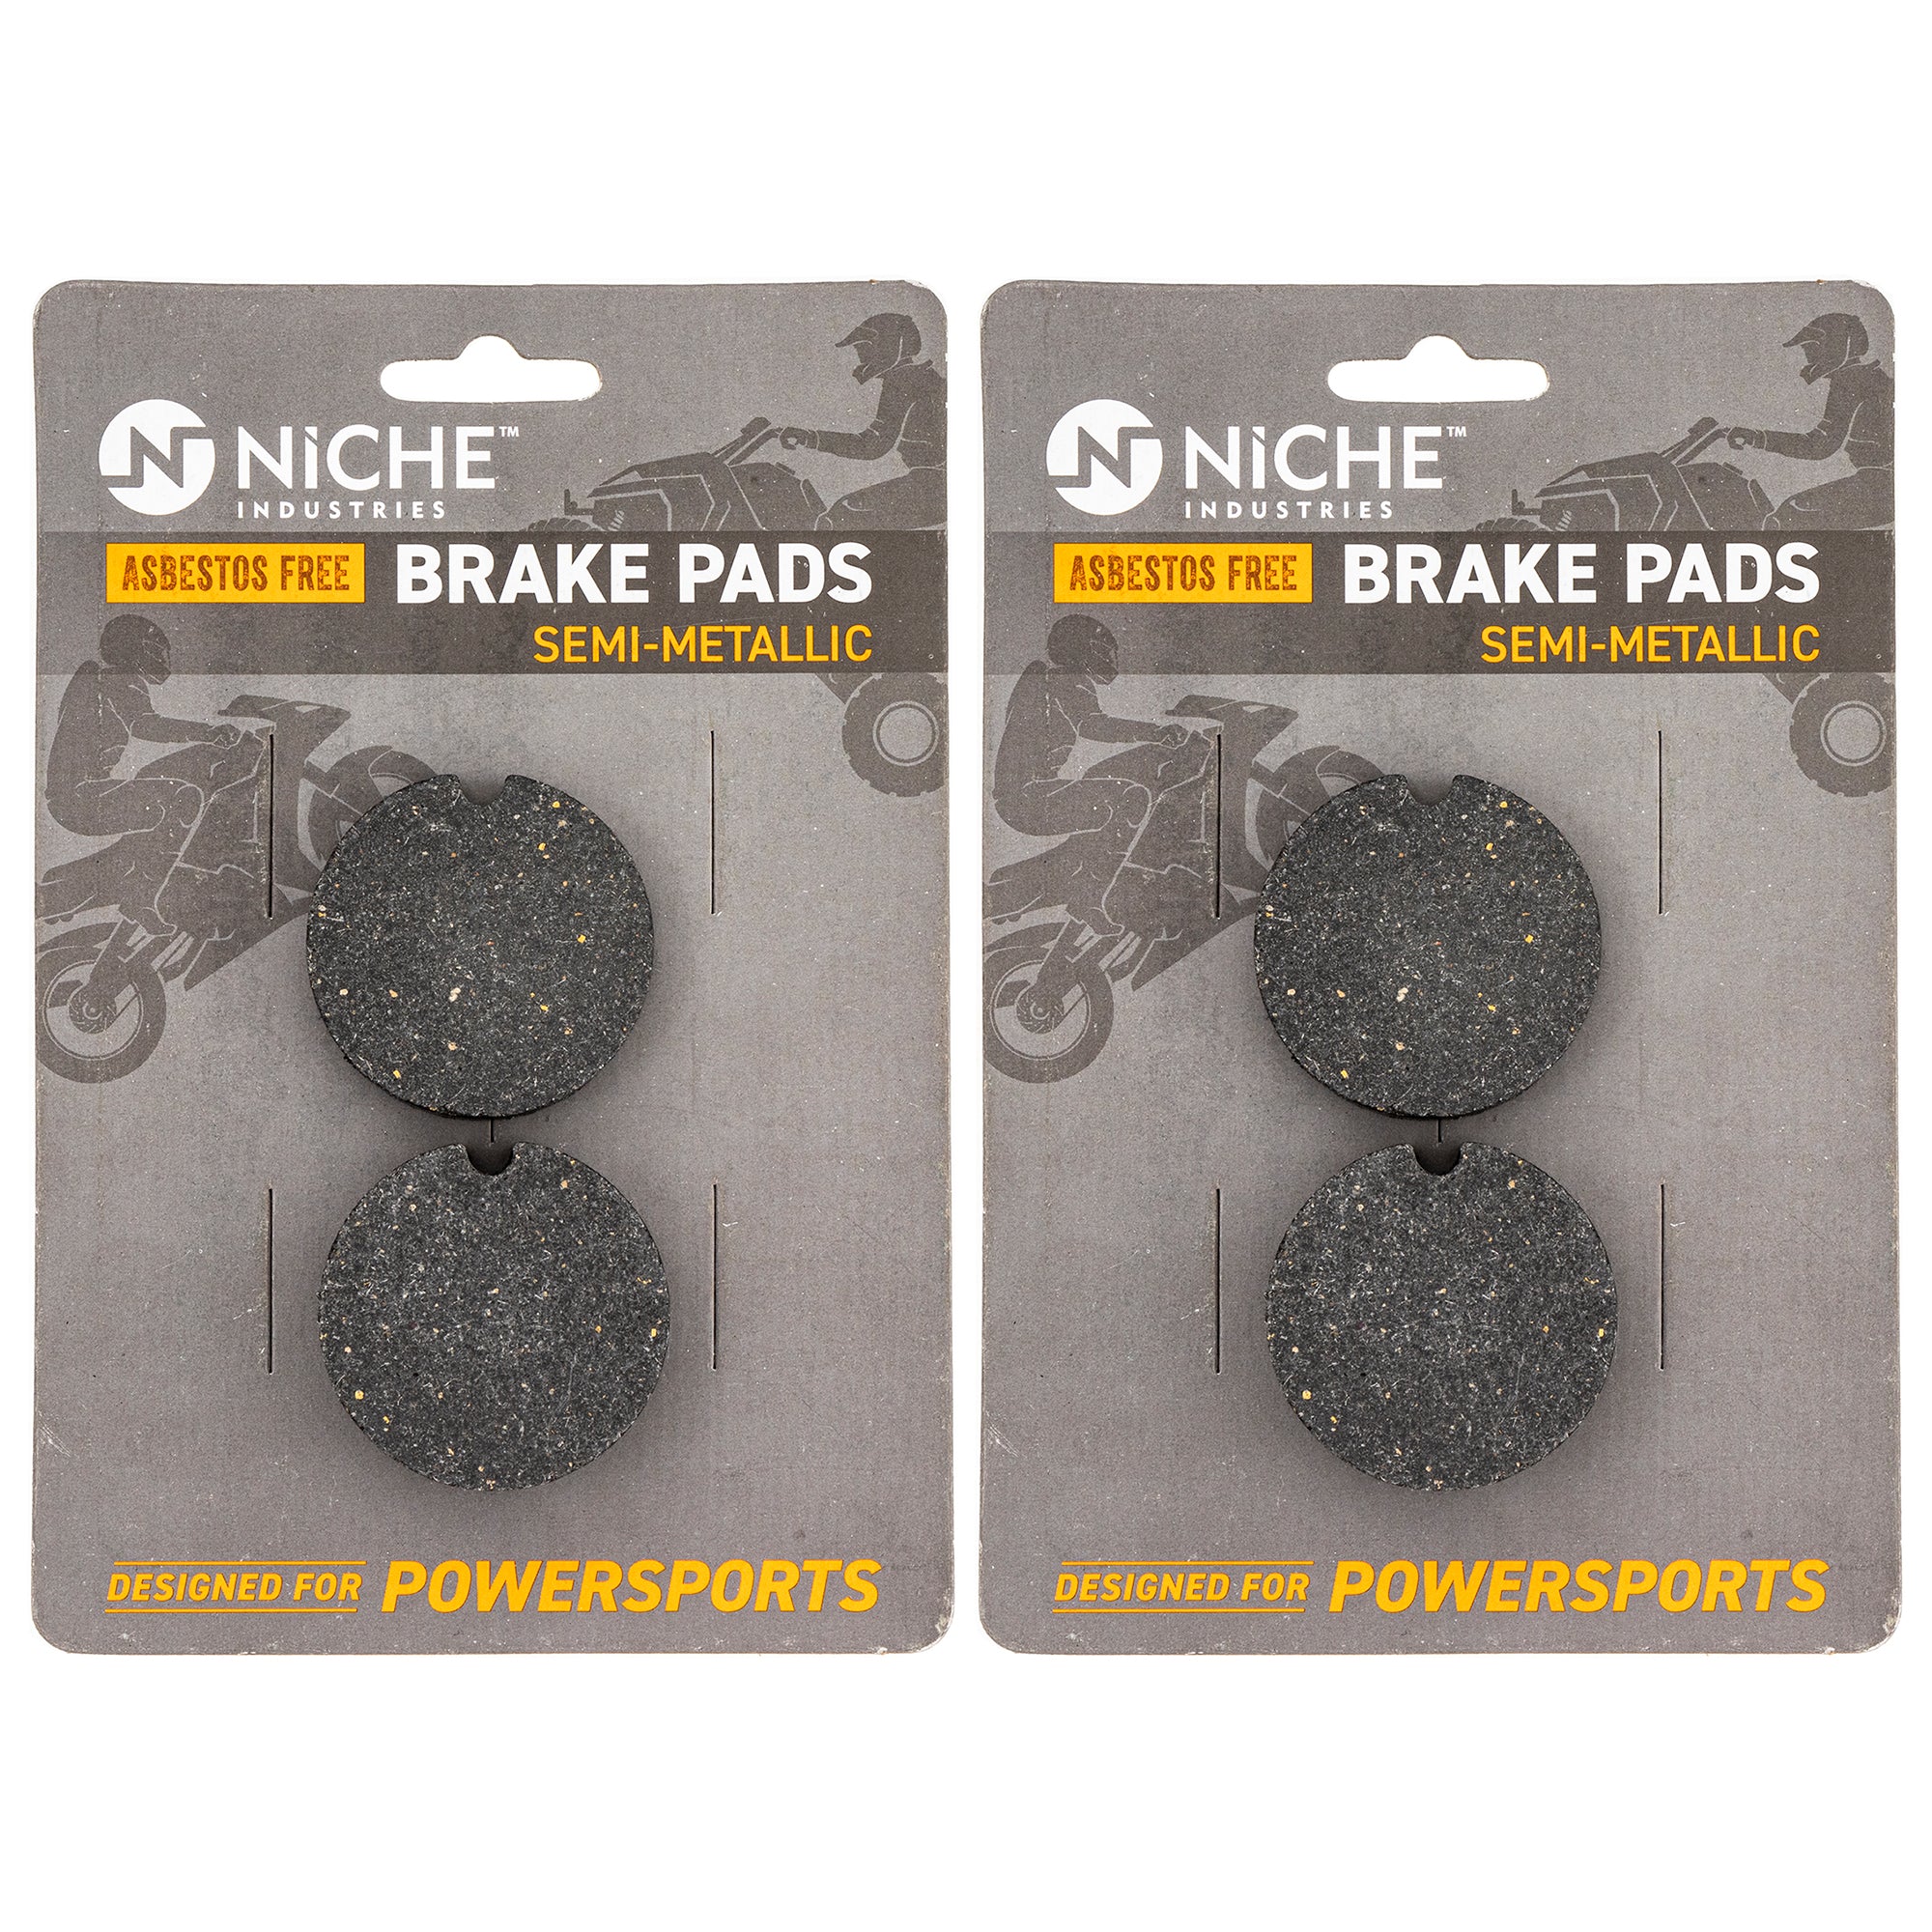 Rear Brake Pads Kit Semi-Metallic 2-Pack for Arctic Cat Textron Cat 0702-264 0702-254 NICHE 519-KPA2512D